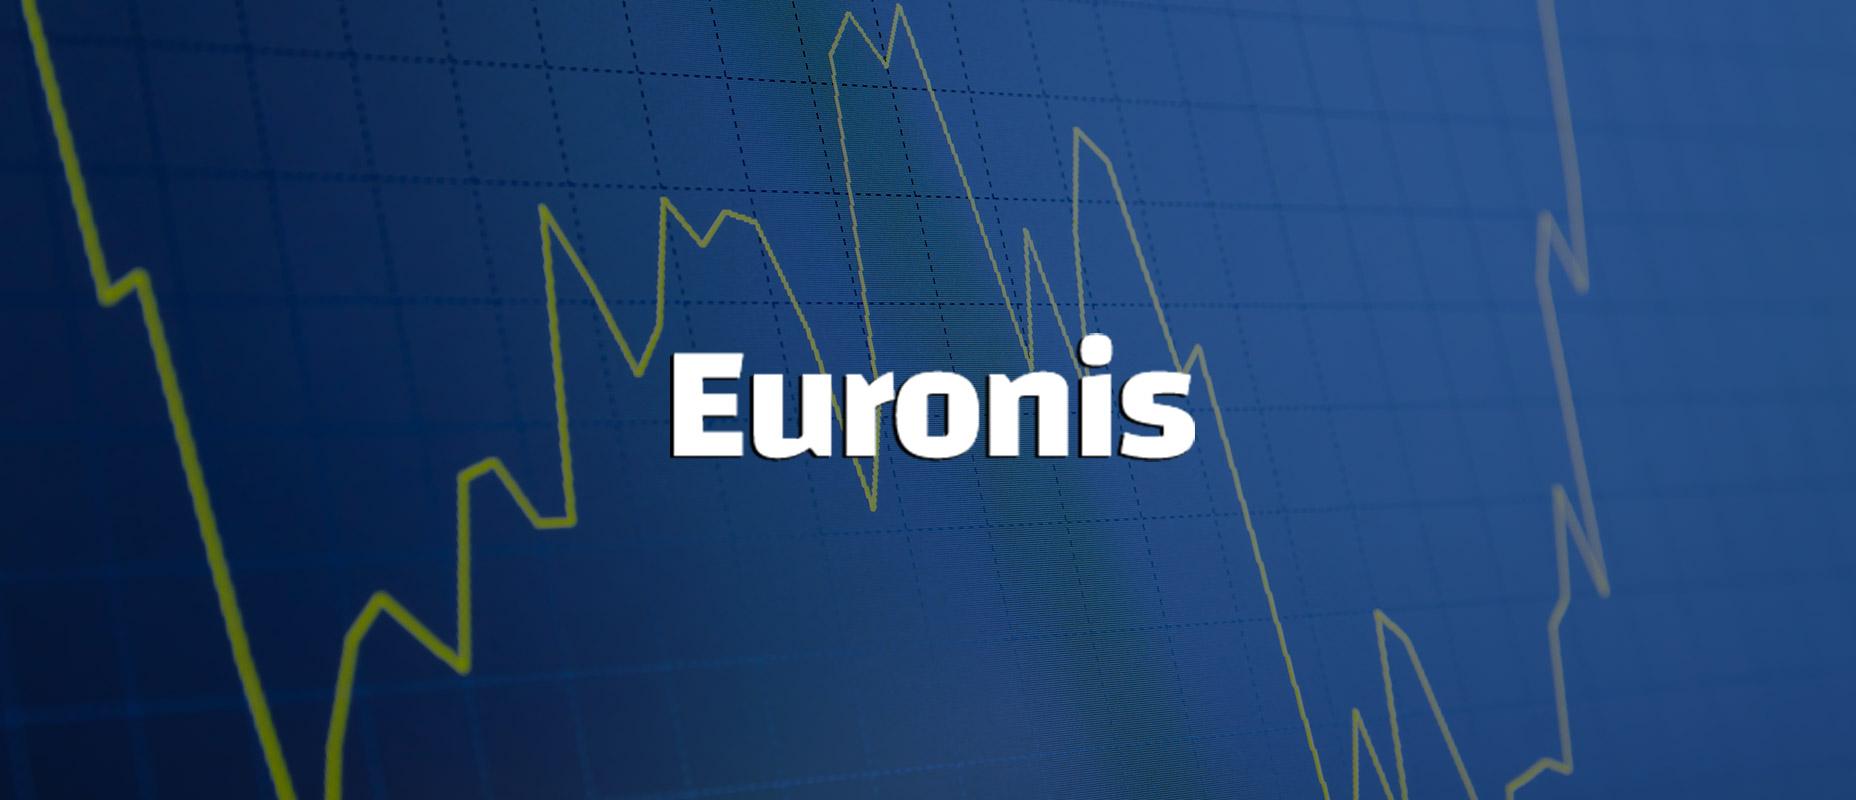 Як використовувати радник Euronis: налаштування та тестування